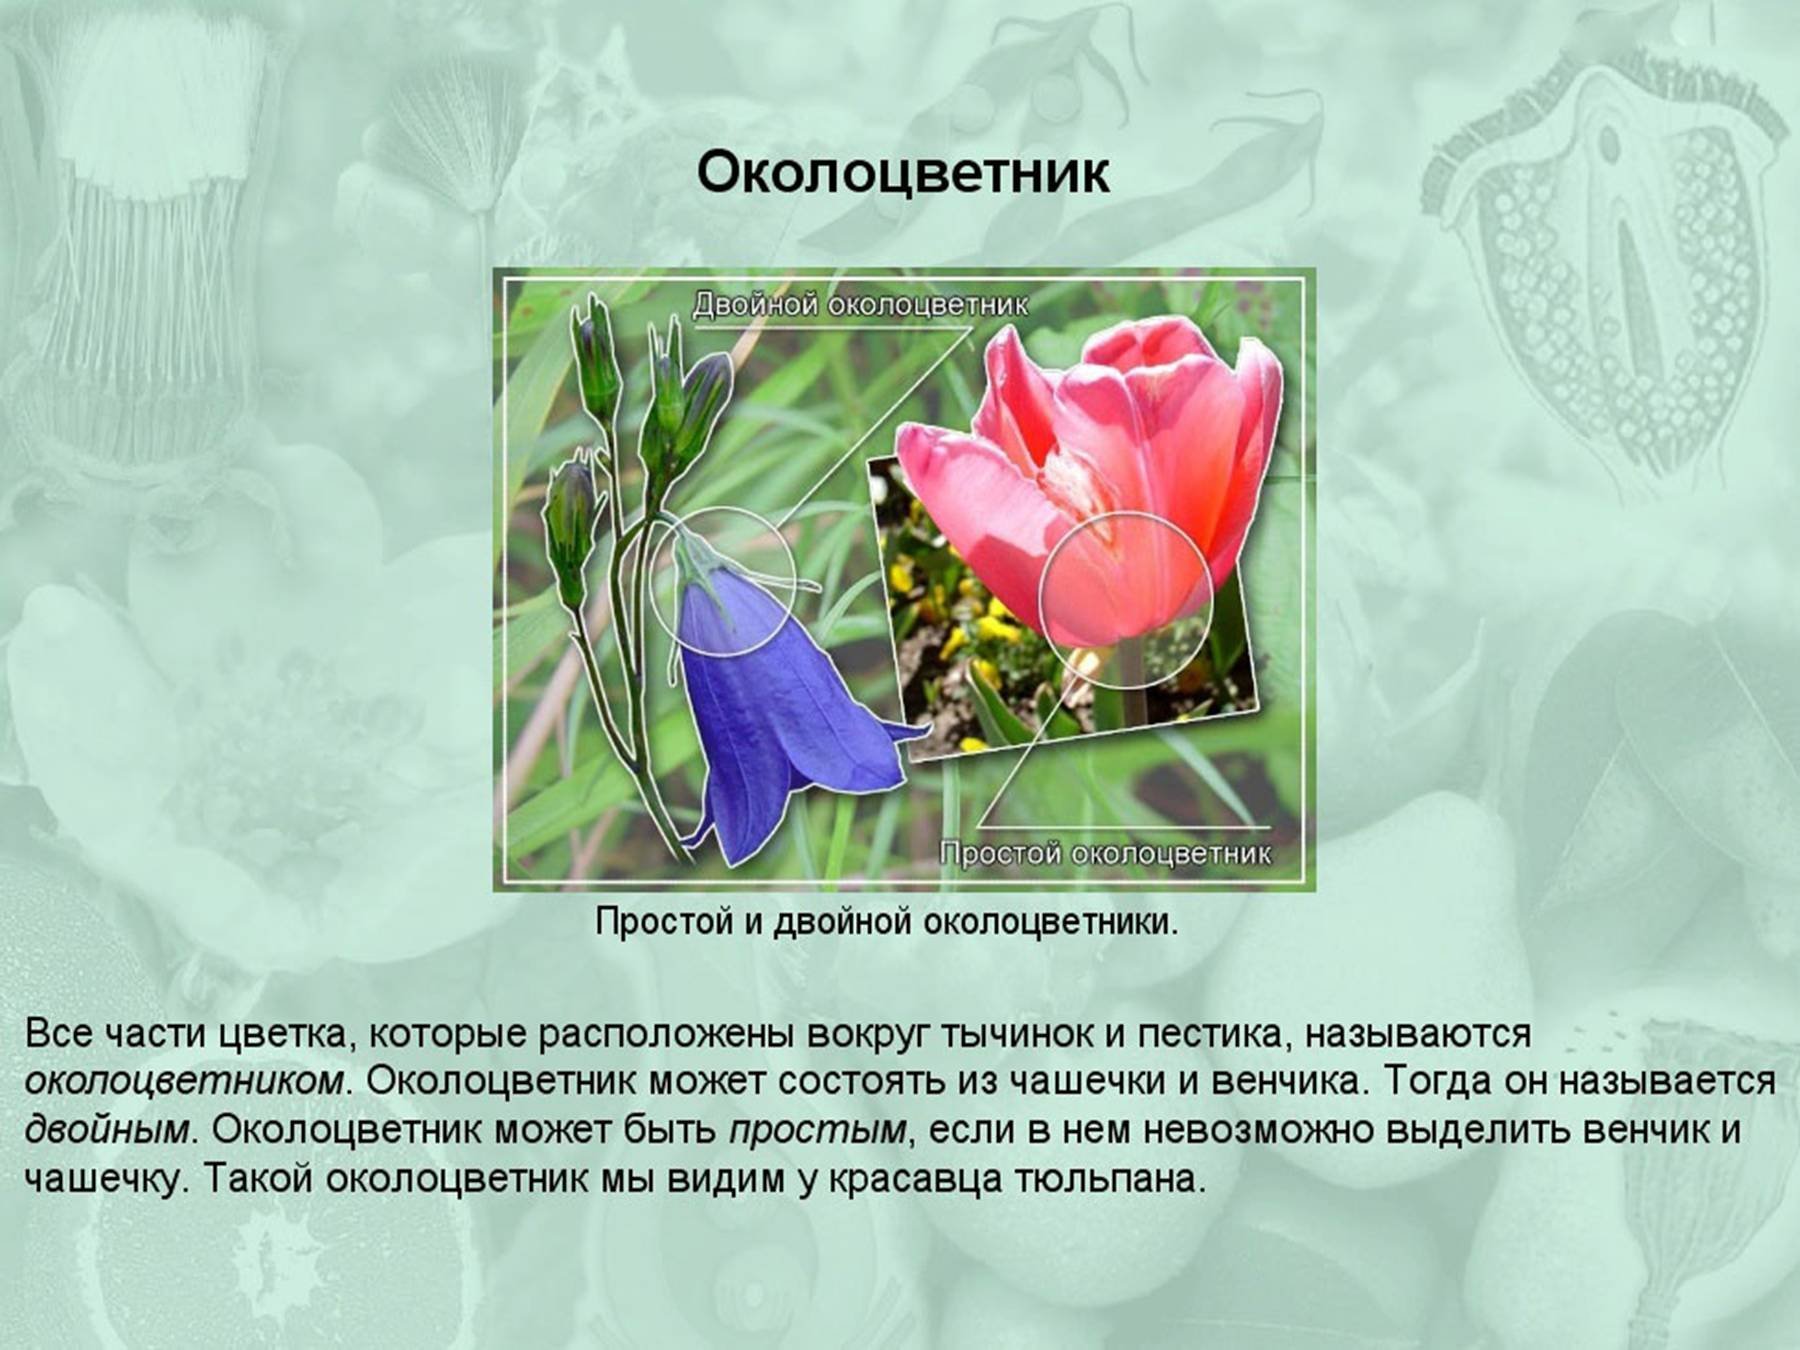 Какой околоцветник у растений. Околоцветник цветка состоит. Околоцветник тюльпана чашечка и венчик. Растения с двойным околоцветником. Двойной околоцветник состоит из.